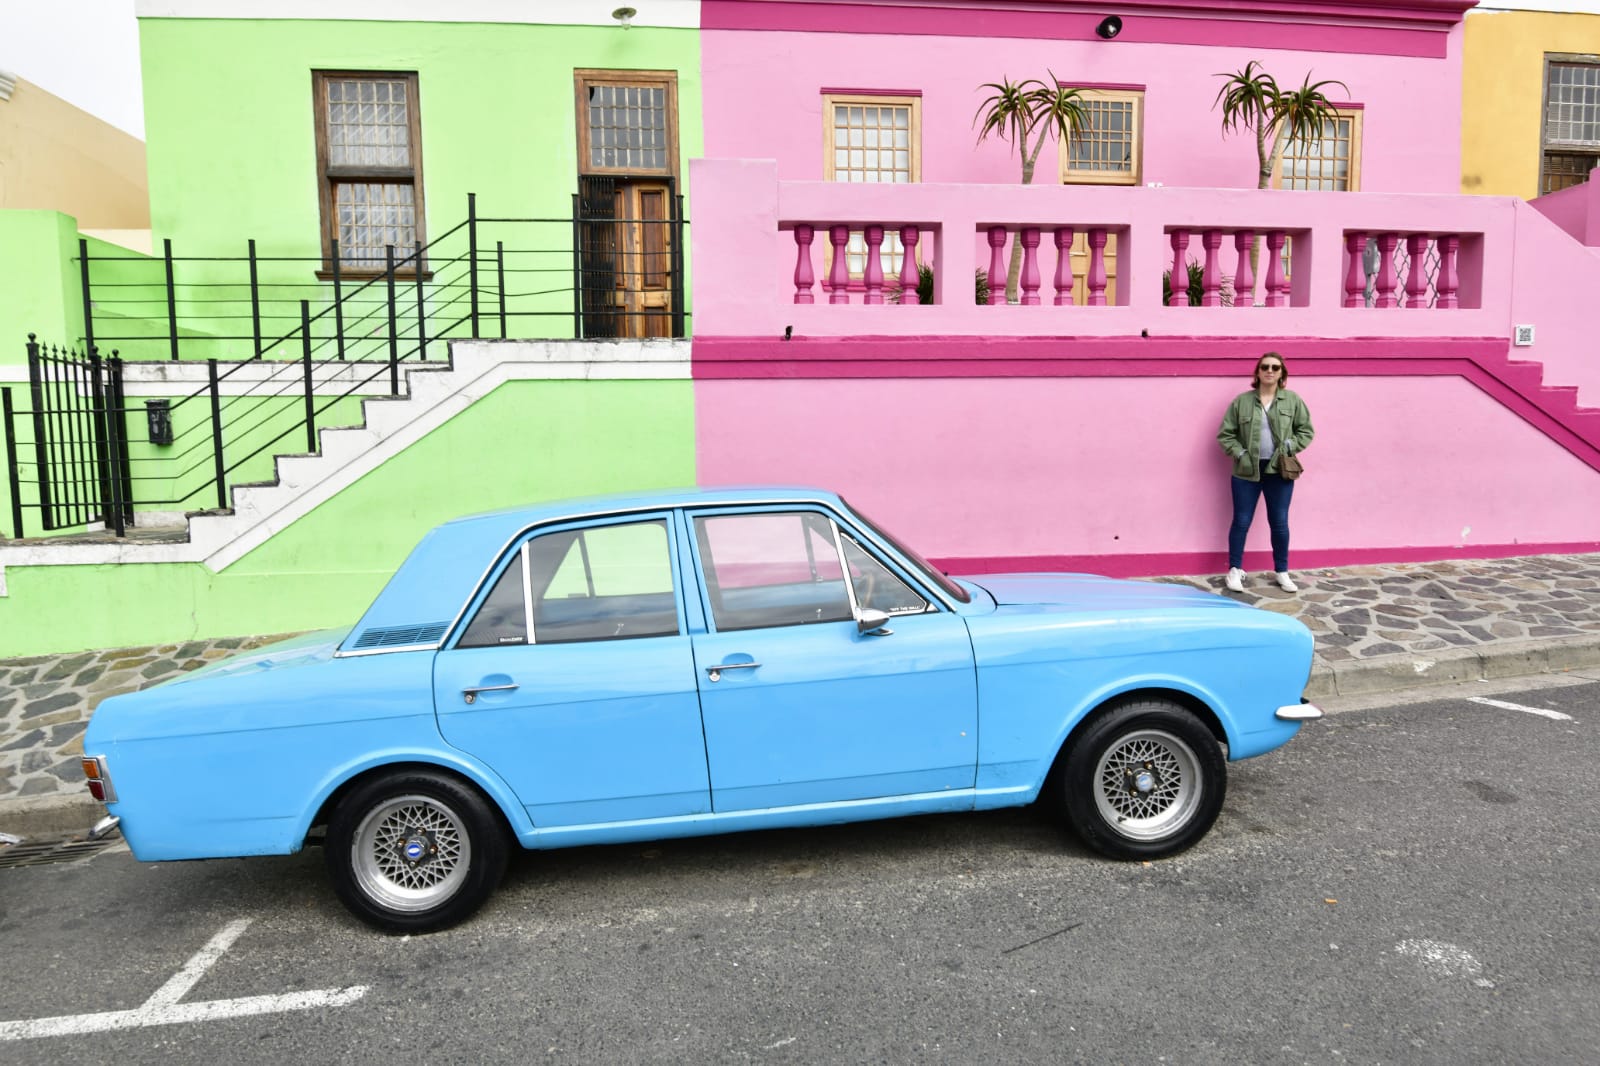 mireia clua   In a pop mood in Cape Town   Cape town Sudafrica